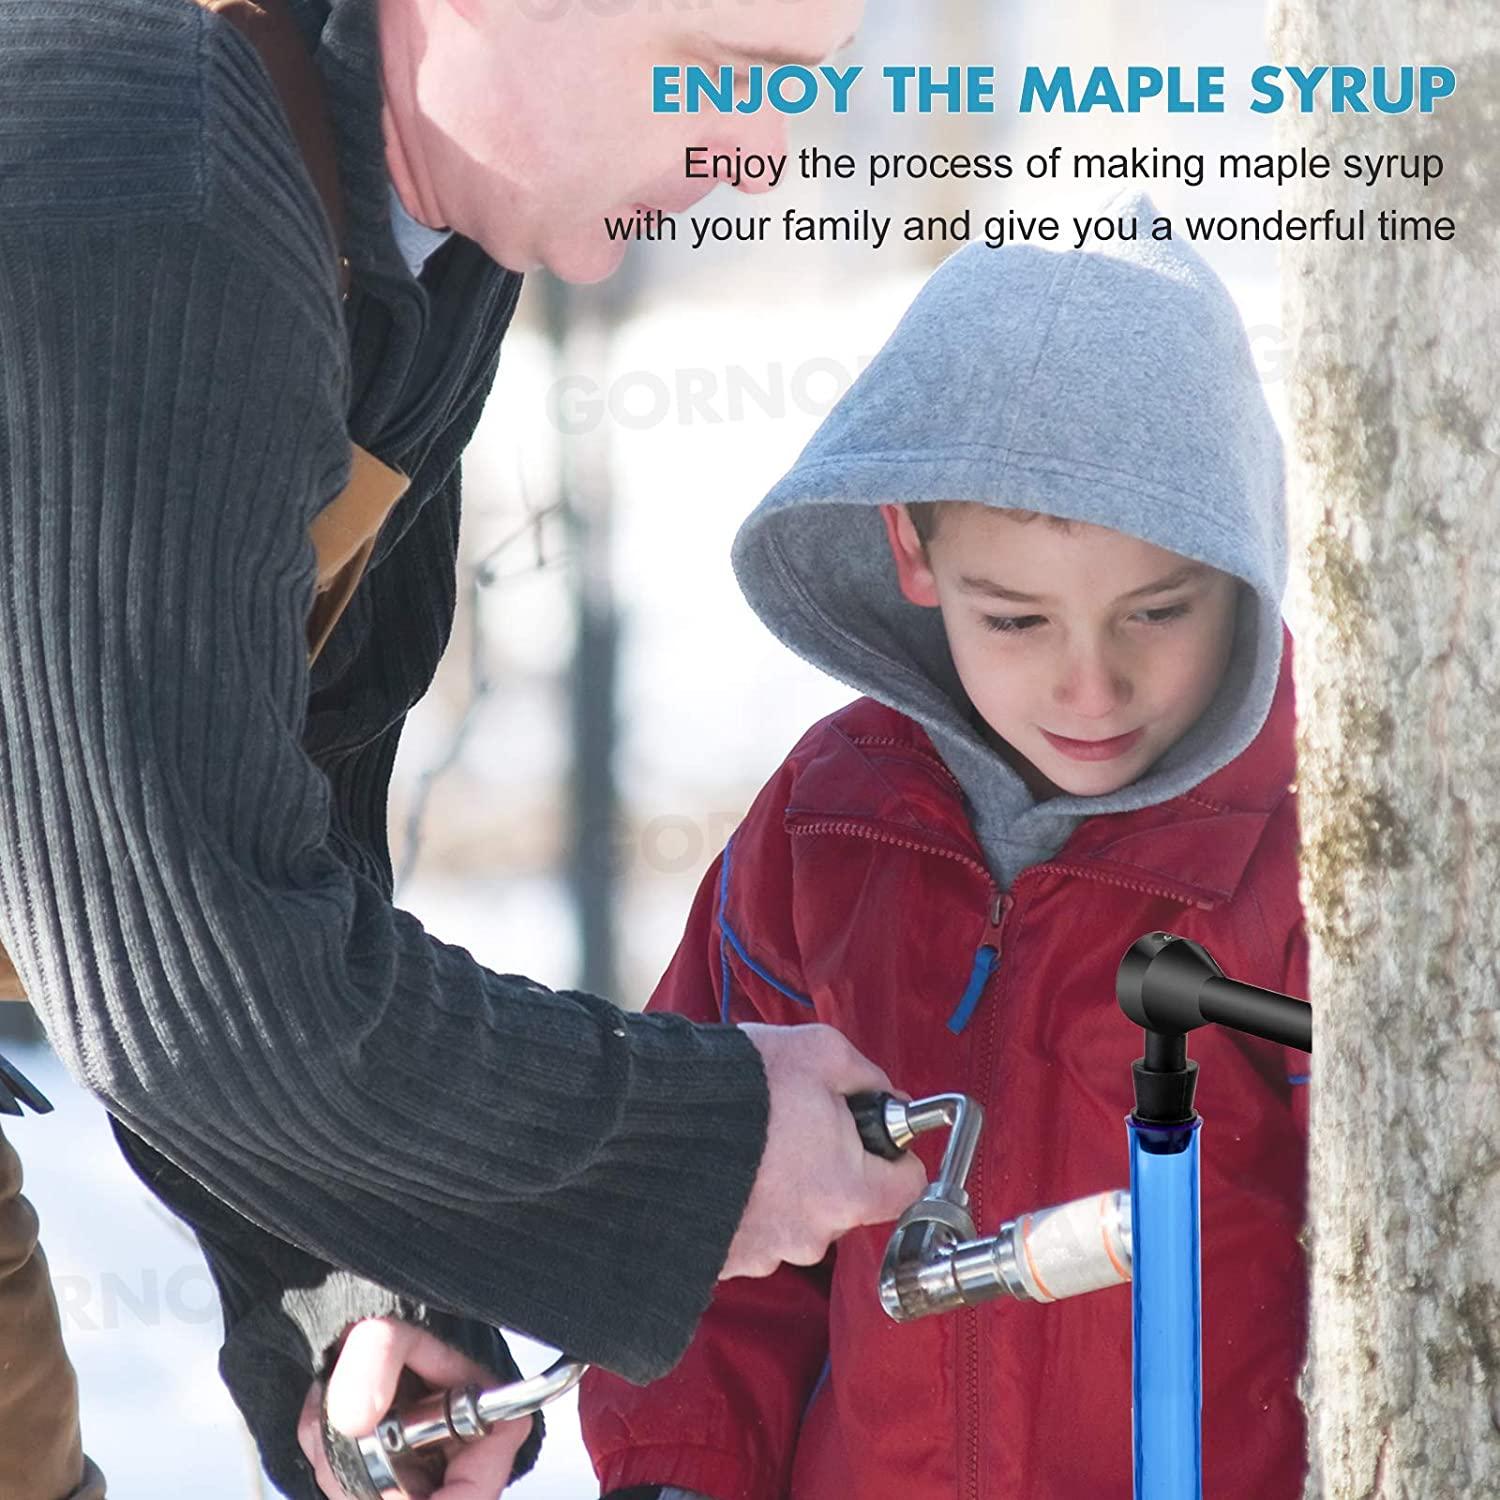 Kids Maple Tree Tapping Kit - Taps & Tubes Kit - Fun and Educational Maple Sugaring Kit